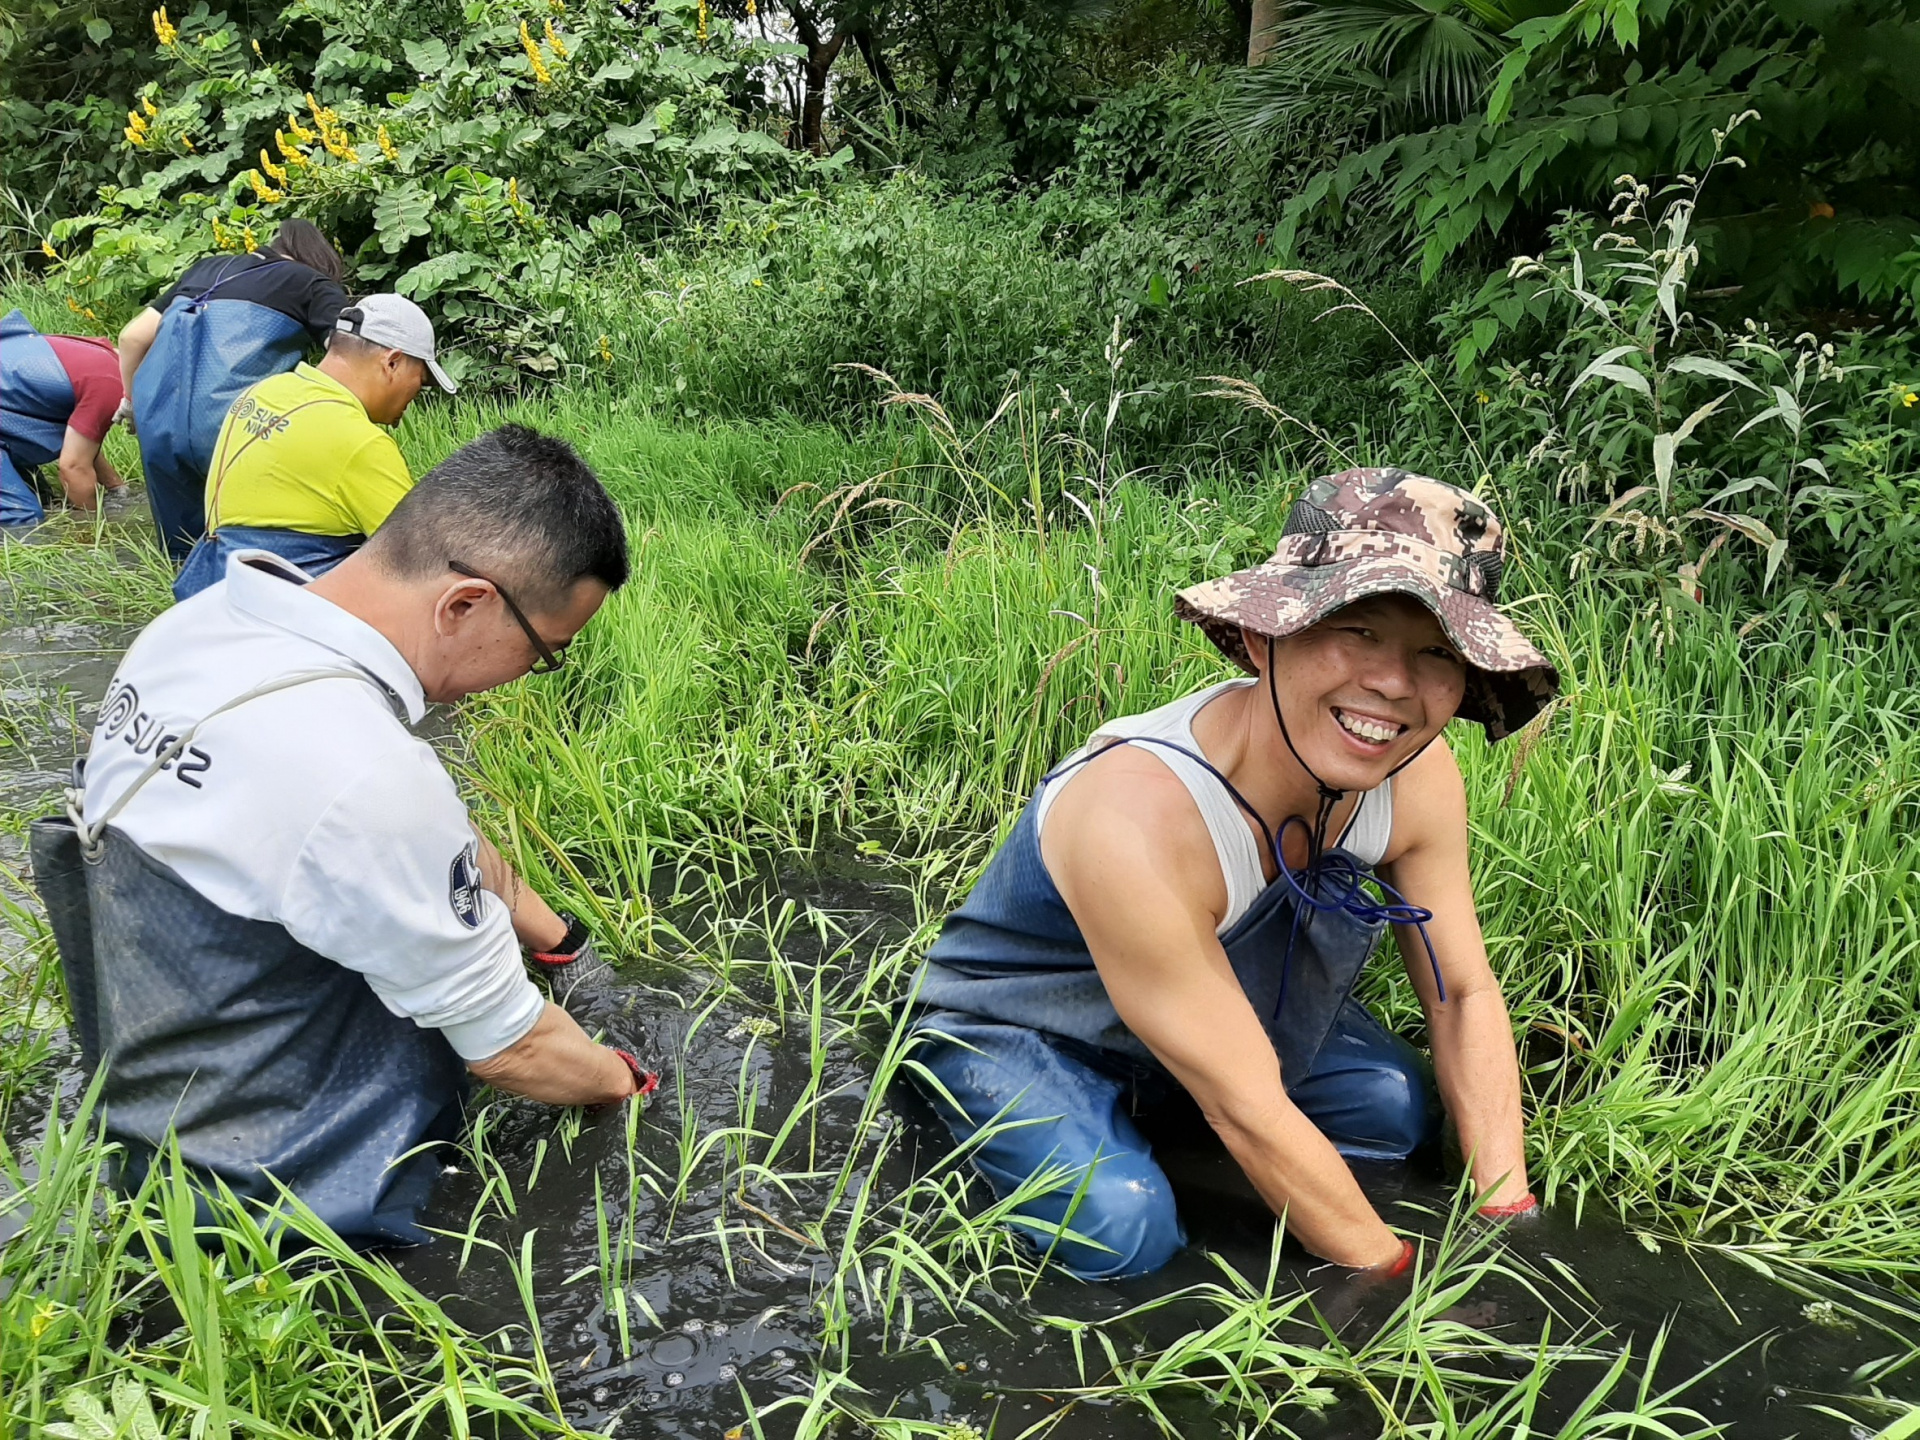 濕 盟 推 動 環 境 教 育 活 動 ， 透 過 志 工 培 訓 與 特 色 課 程 帶 領 學 生 探 索 濕 地 生 態 與 環 境 。 